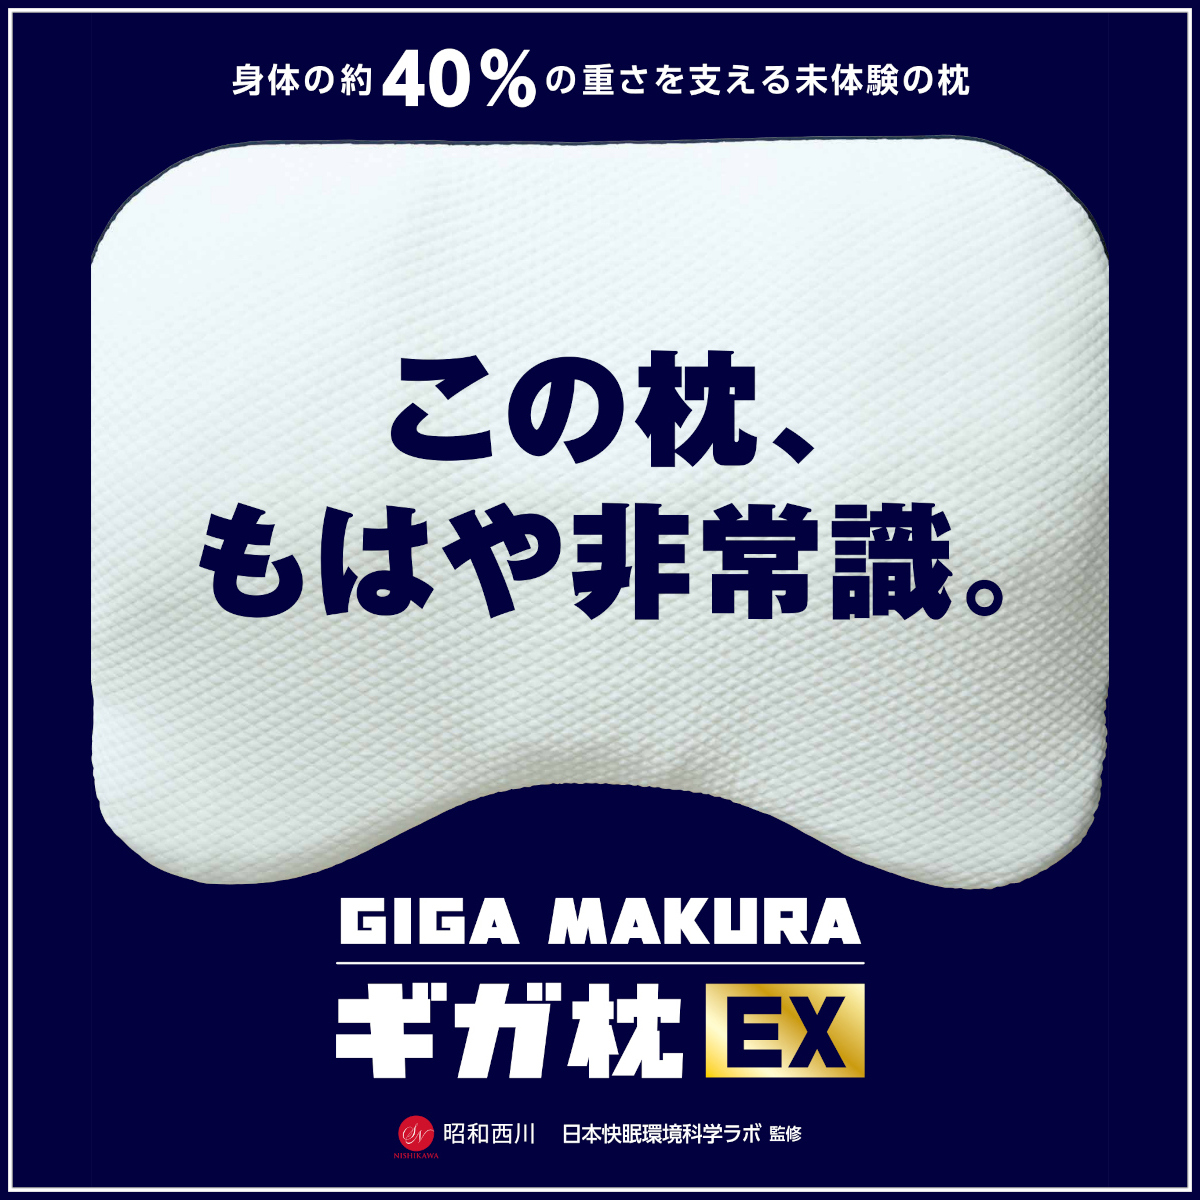 370-1556>昭和西川 ギガ枕 EX 身体の約40%の重さを支える 未体験の枕